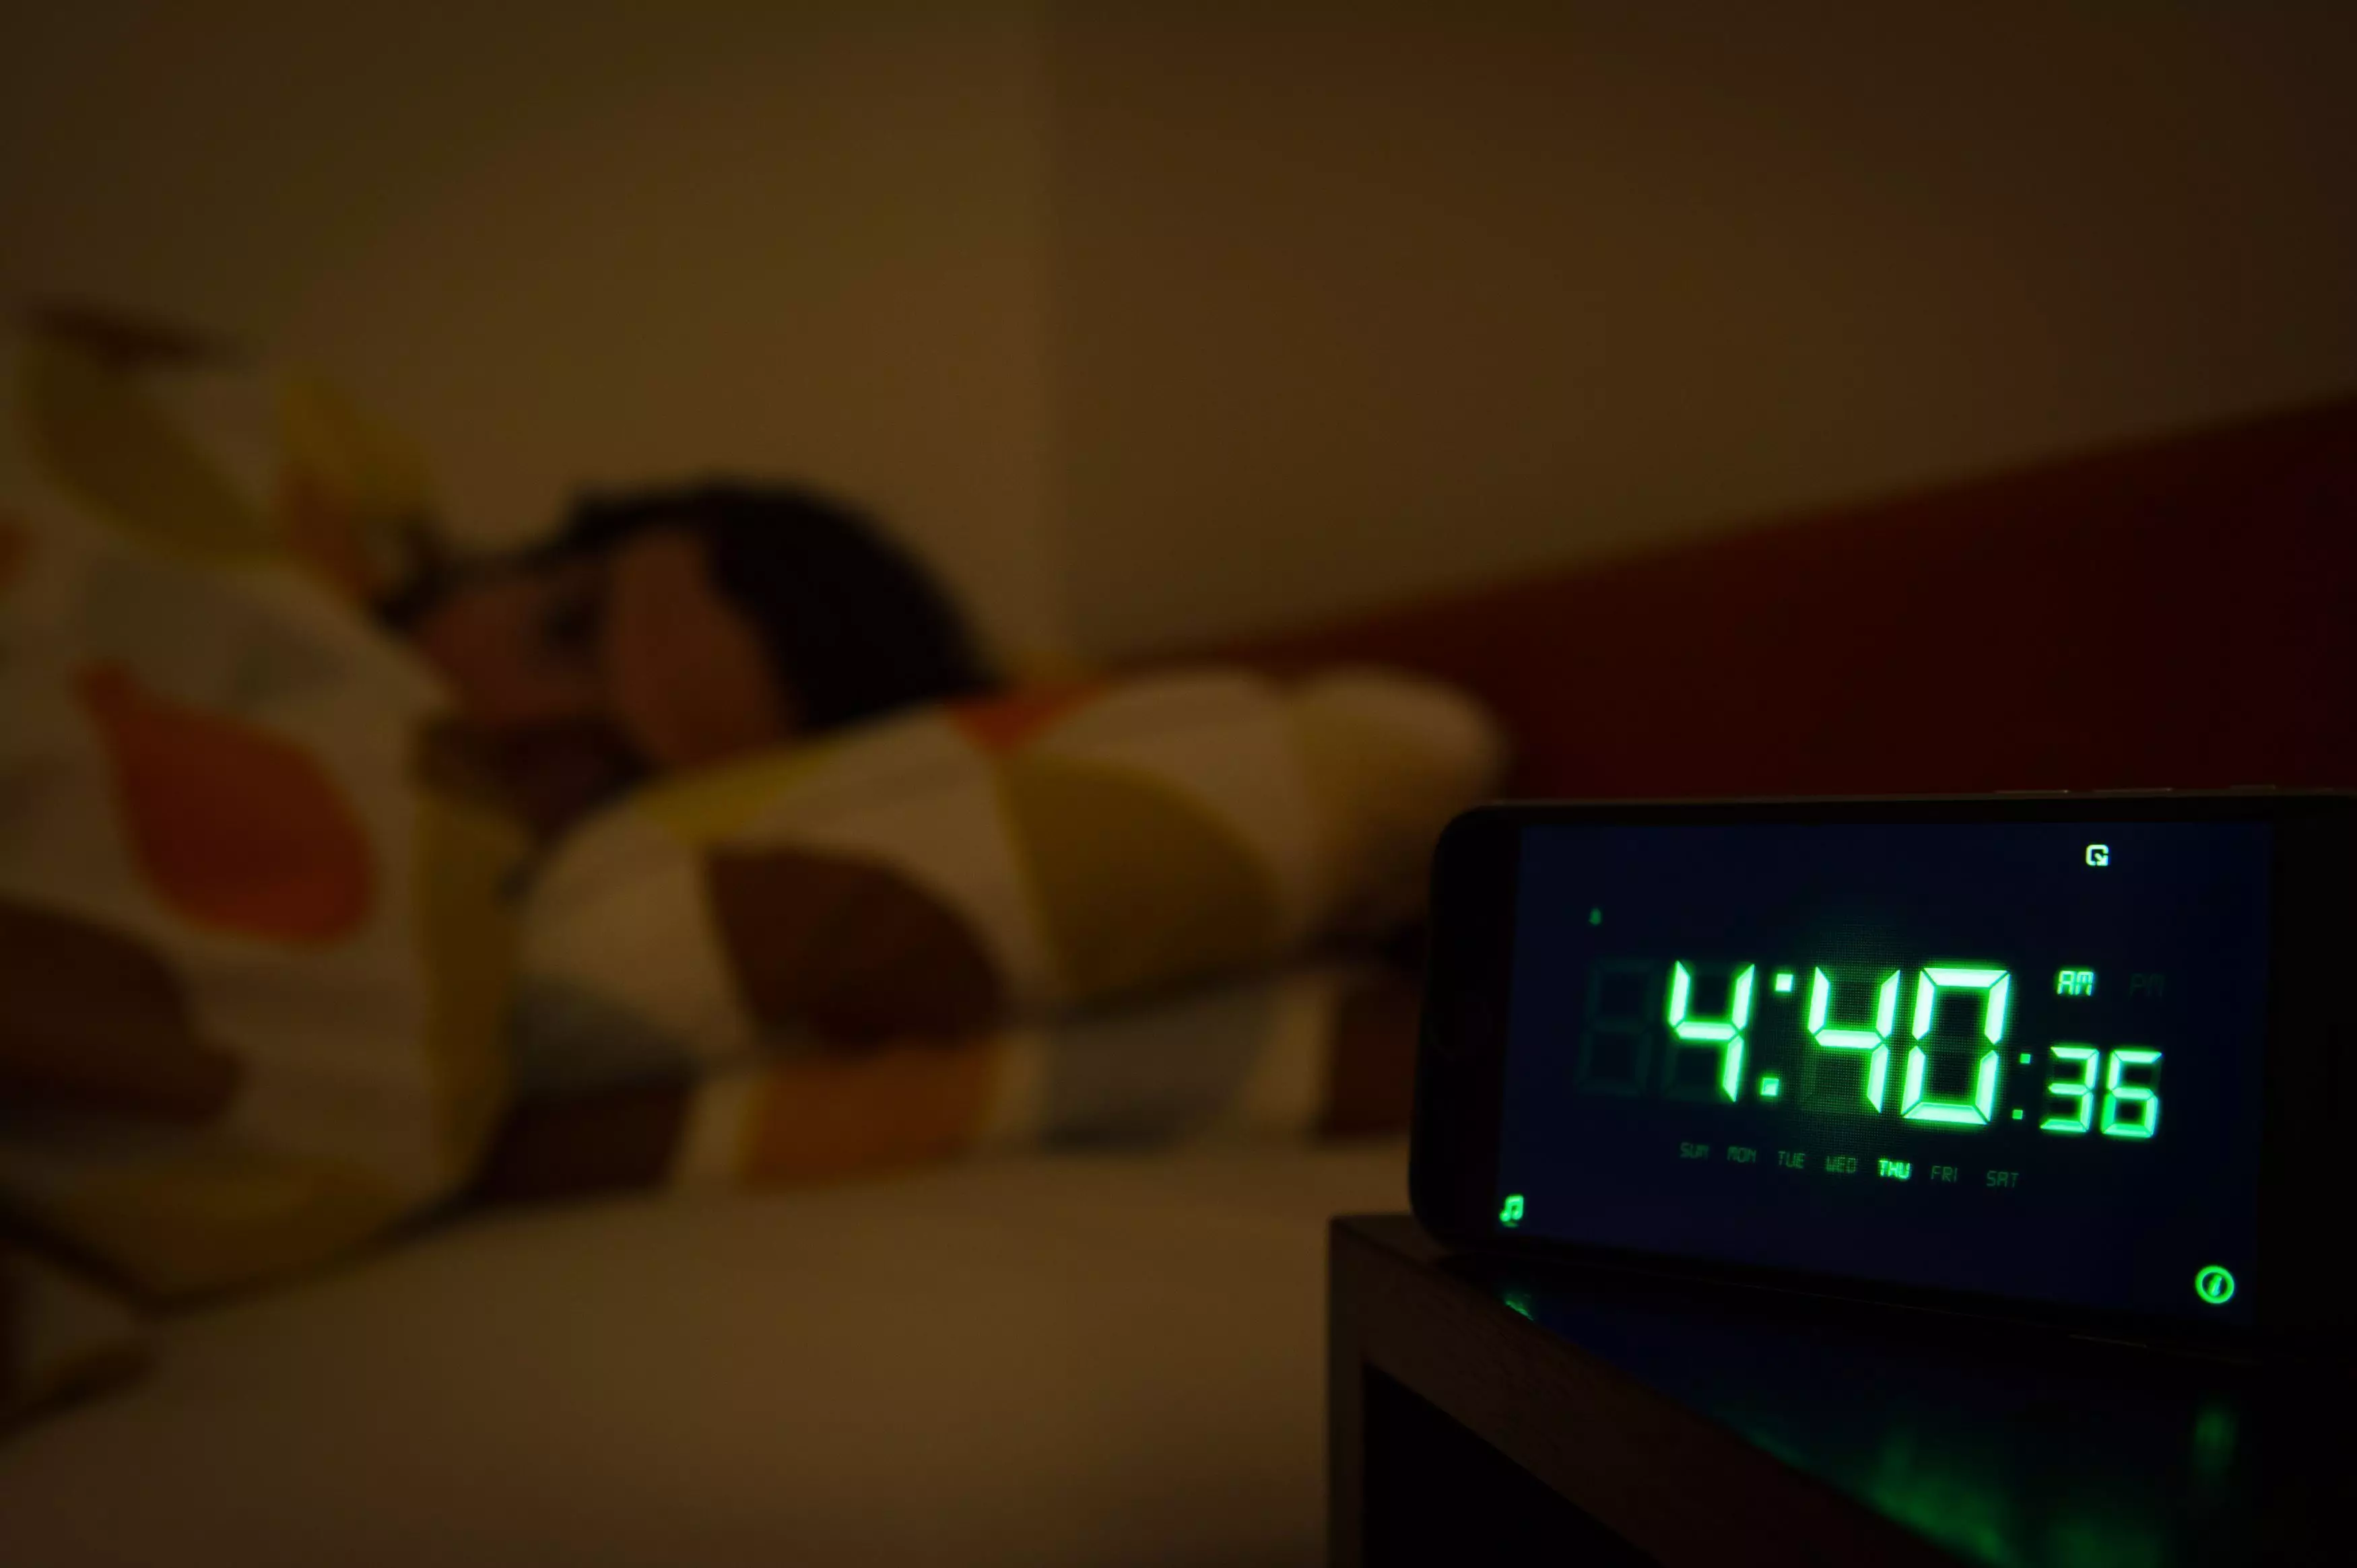 Bad sleep creates a bad mood - who knew?